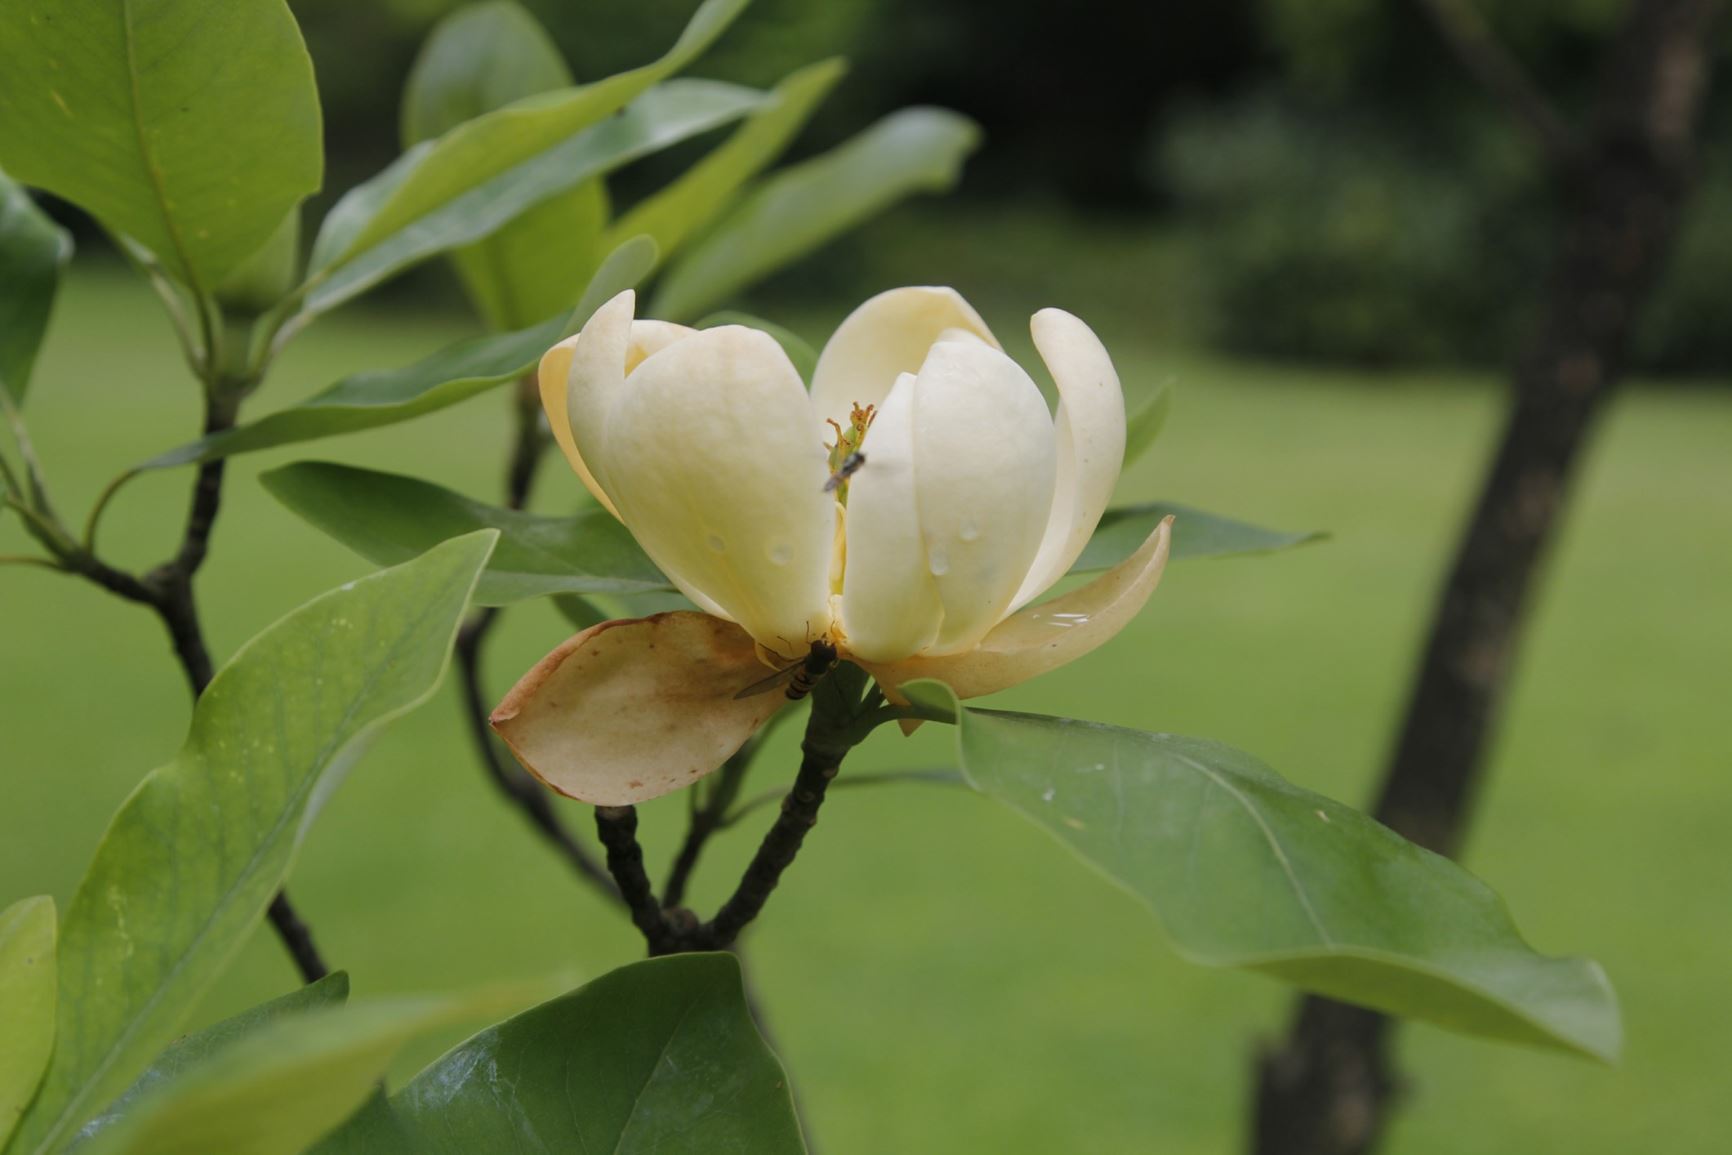 Magnolia virginiana - Moerasmagnolia, Sweet Bay Magnolia